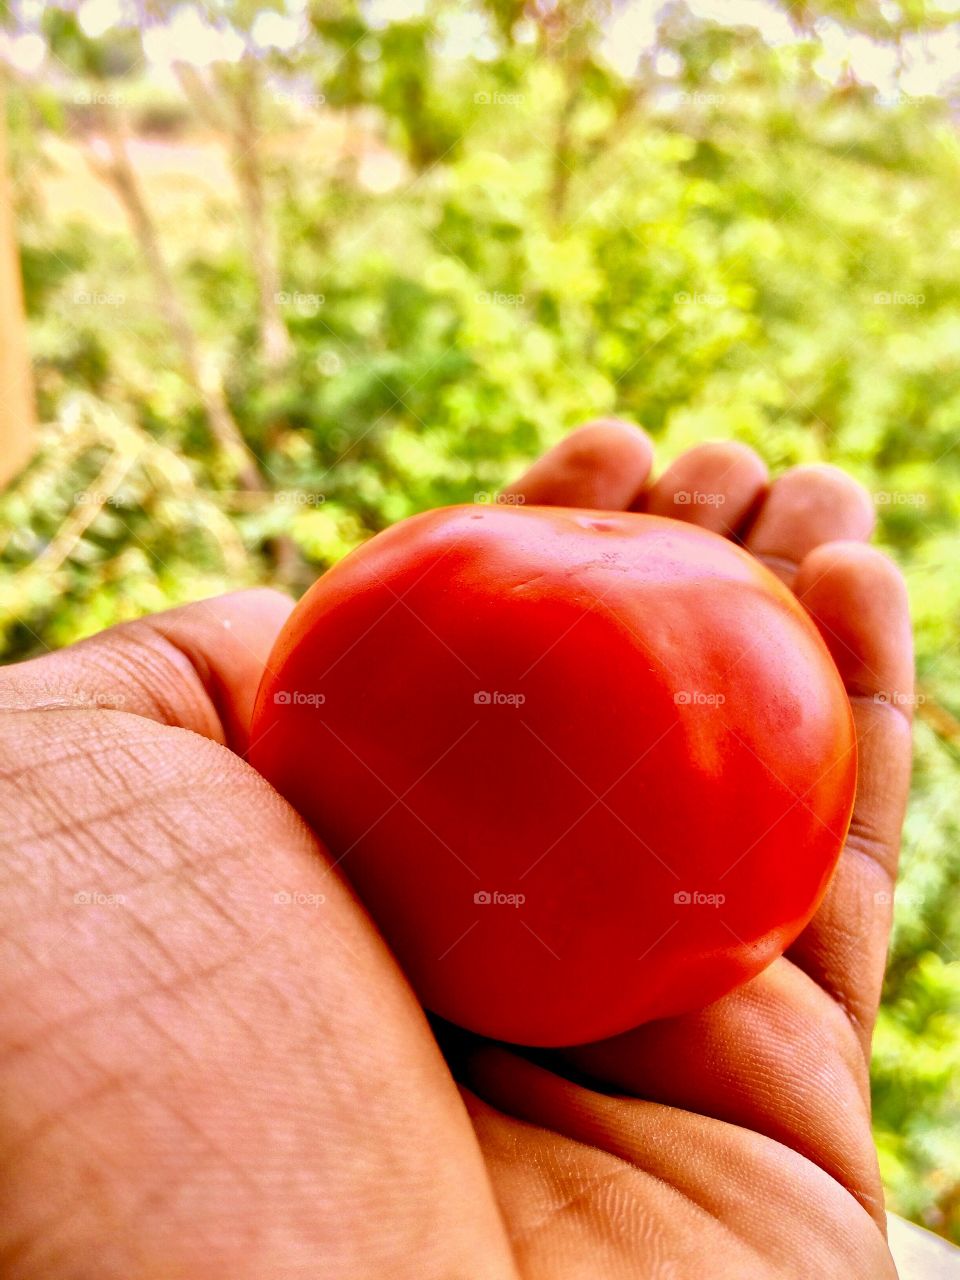 Red colour tomato 